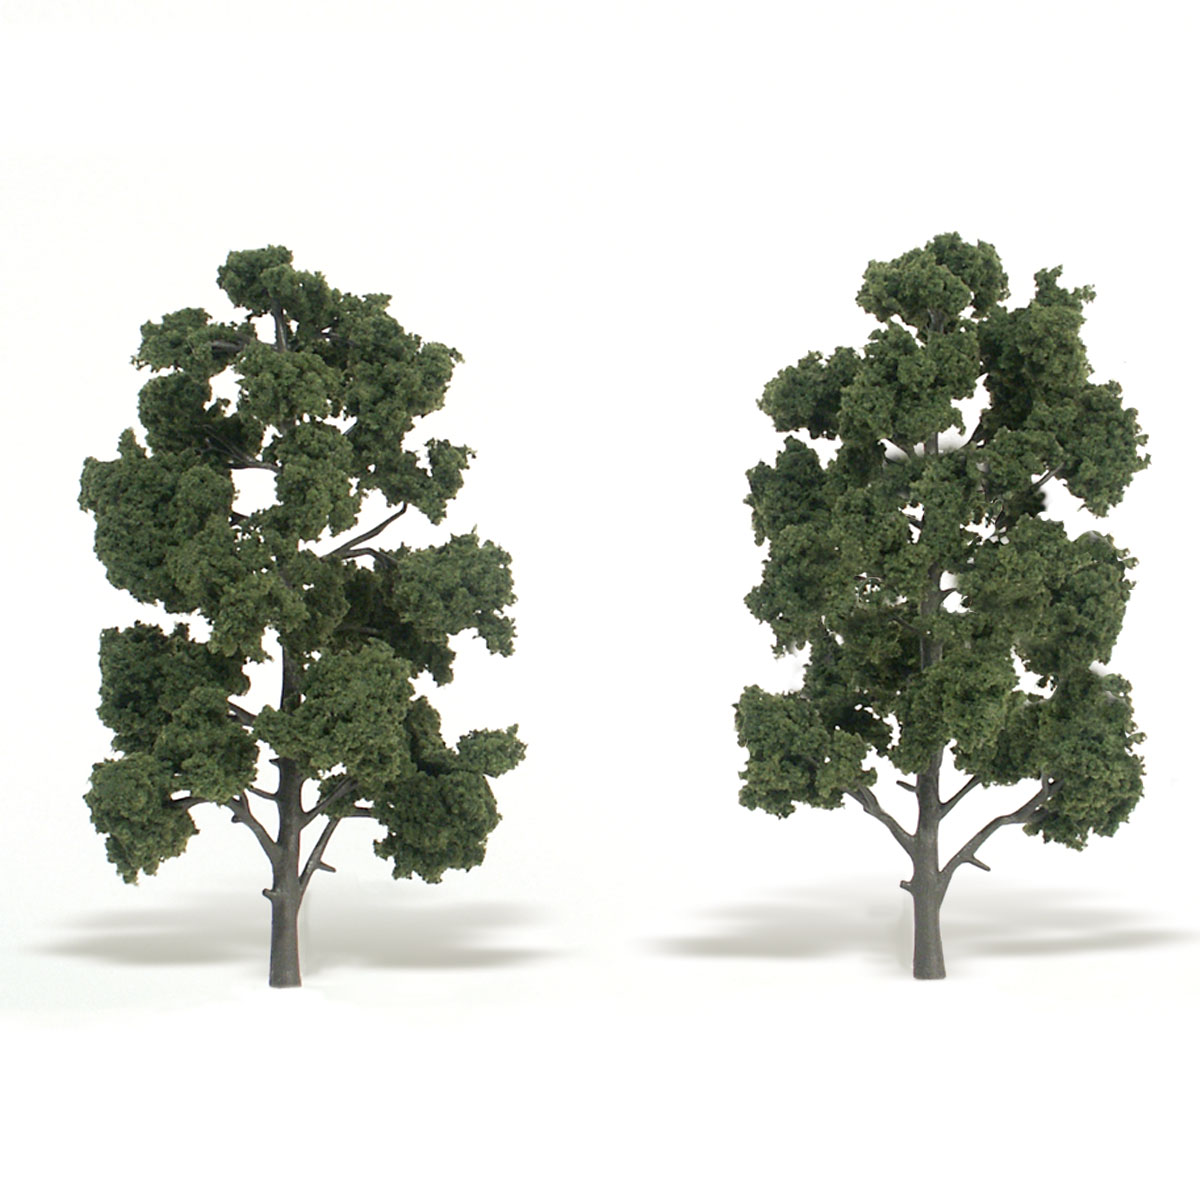 Модели материала. Классическое дерево. Растительность для макета сухая вудланд Сценик. Домино 25772-2 дерево.